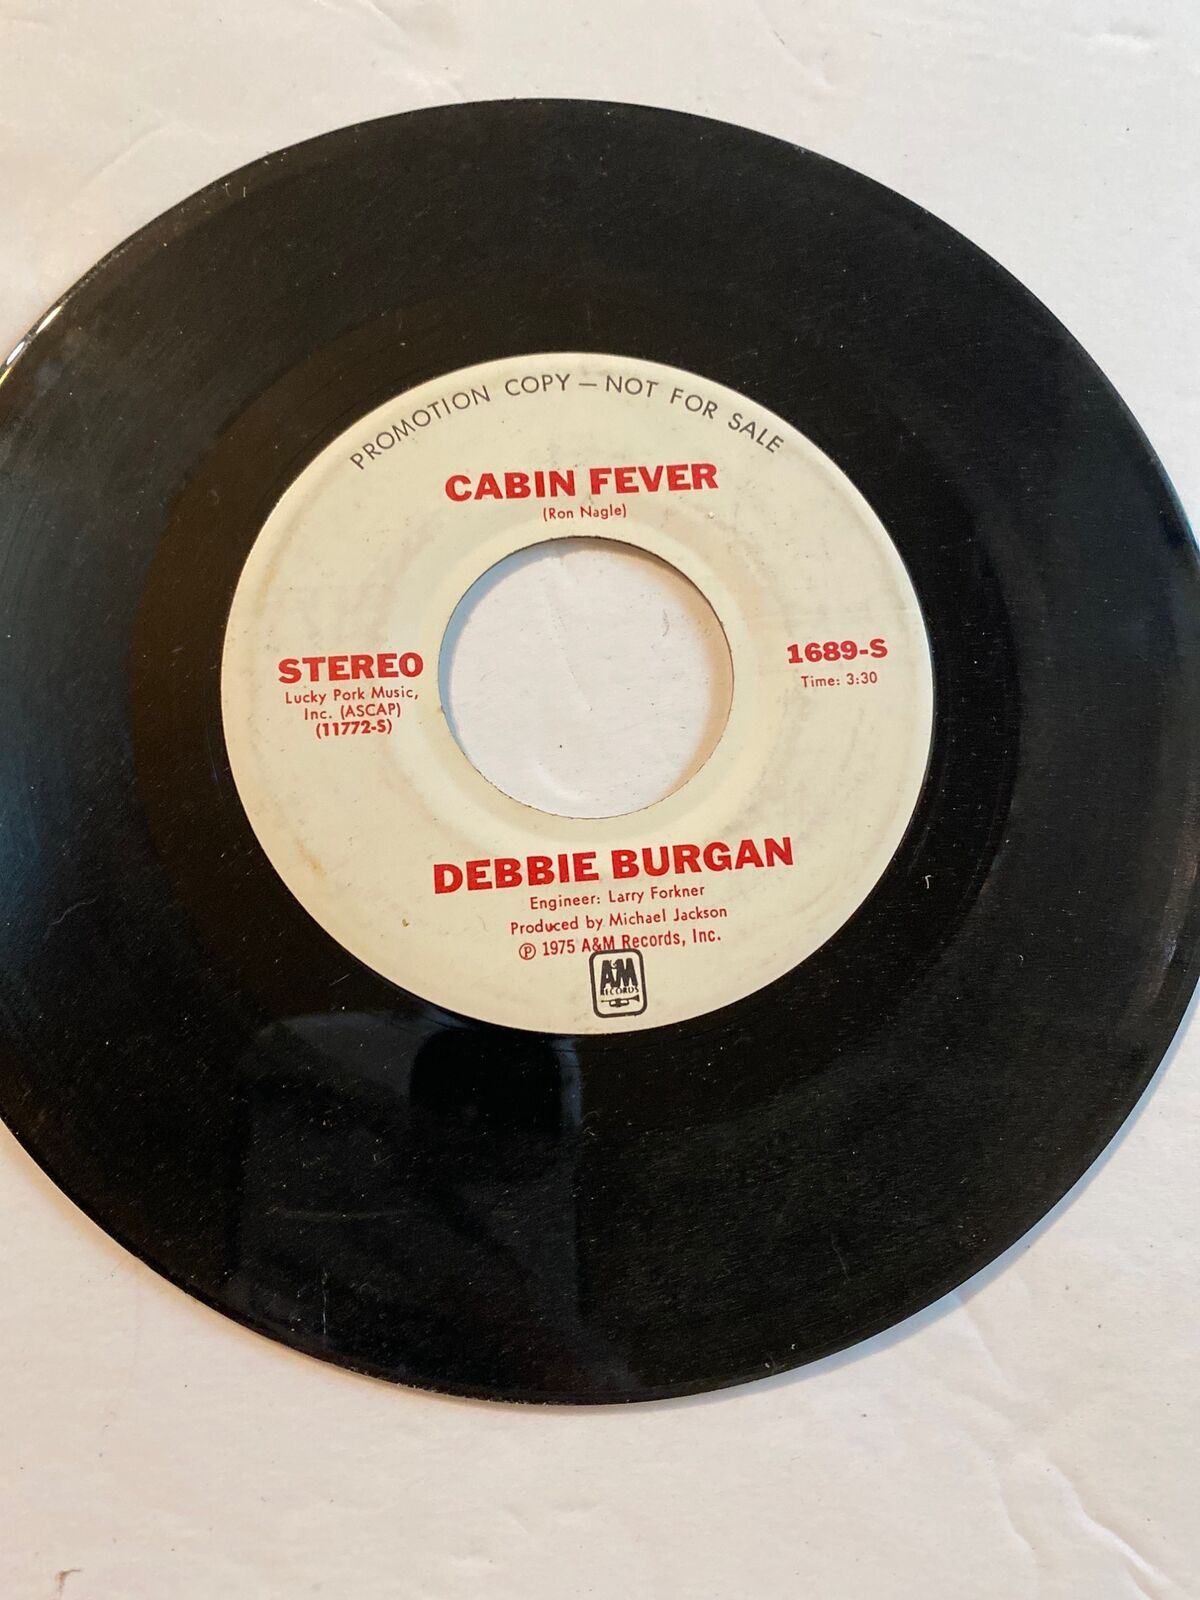 Vintage 7” vinyl record 45 RPM Debbie Burgan cabin fever